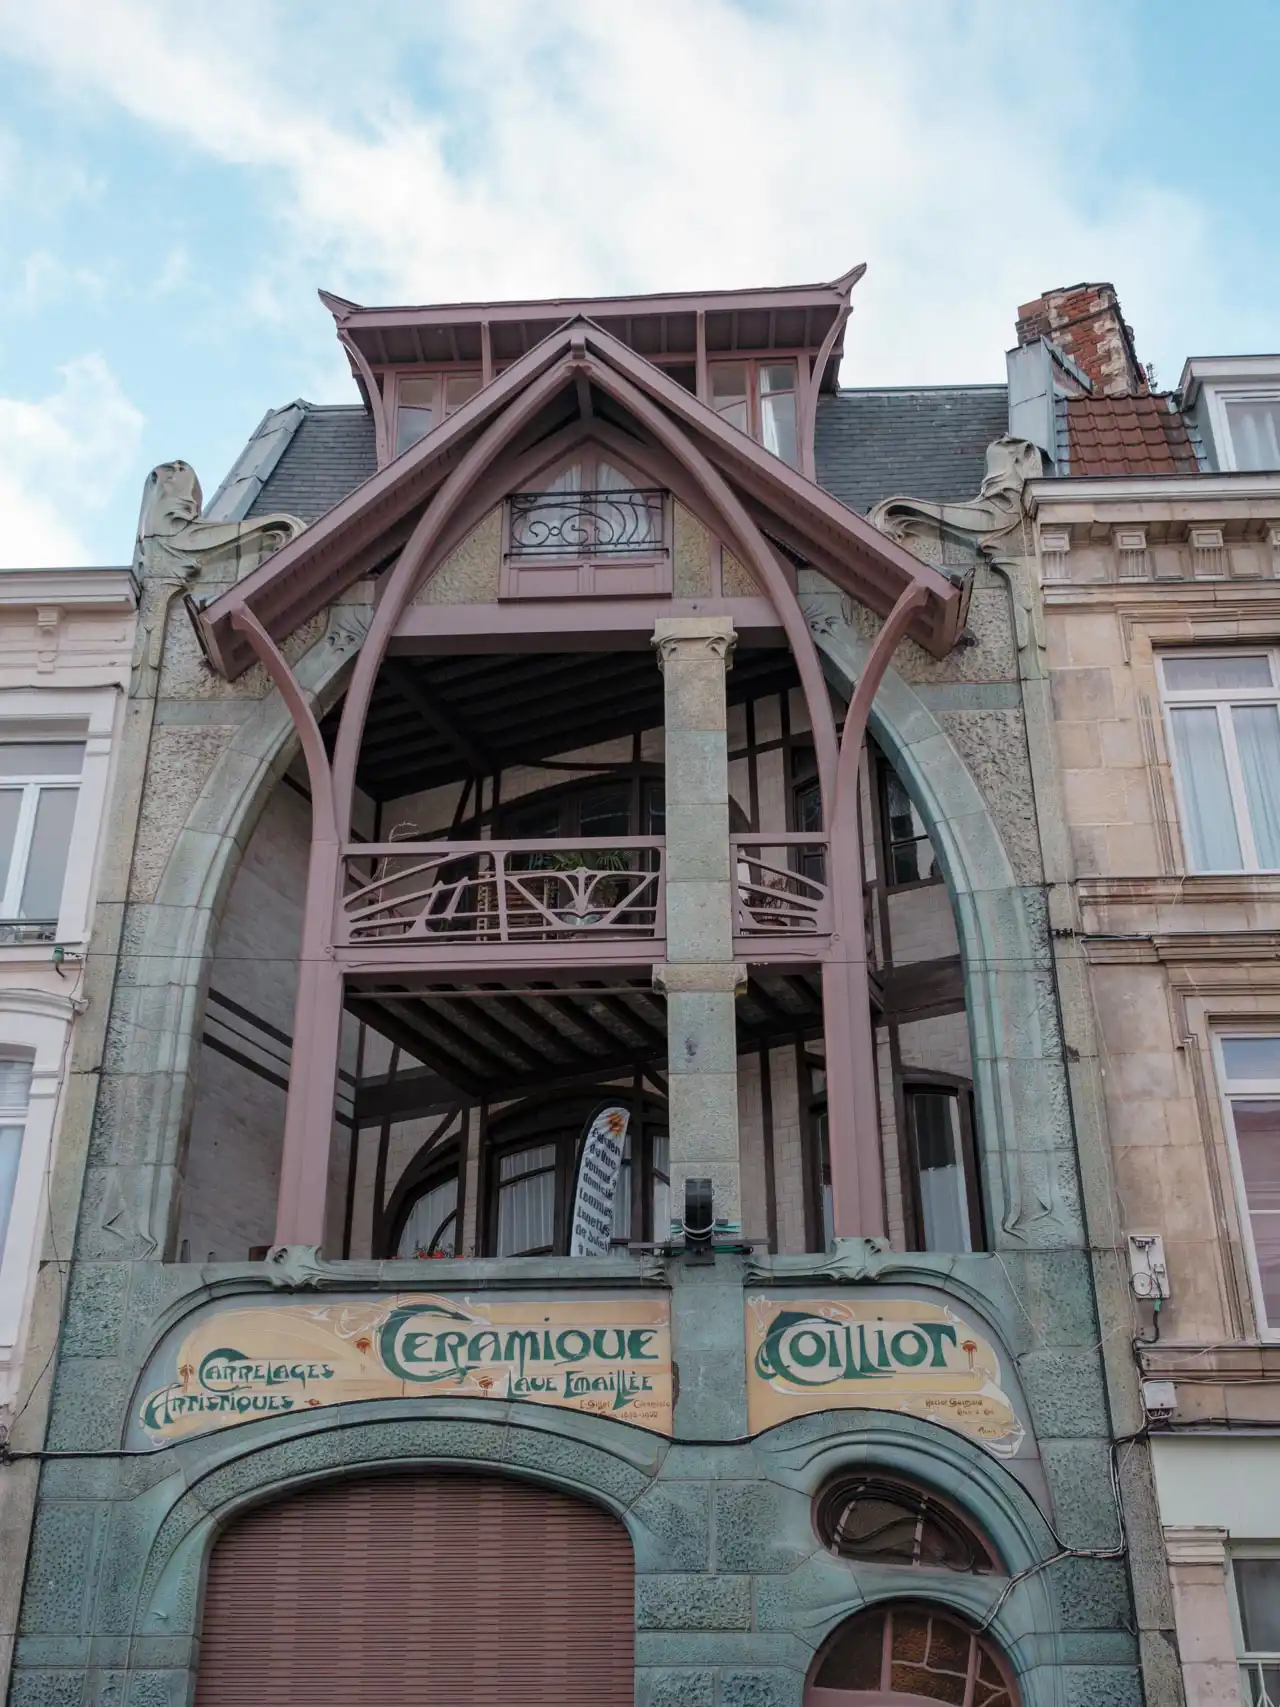 Maison Coillot, maison de style art nouveau à Lille